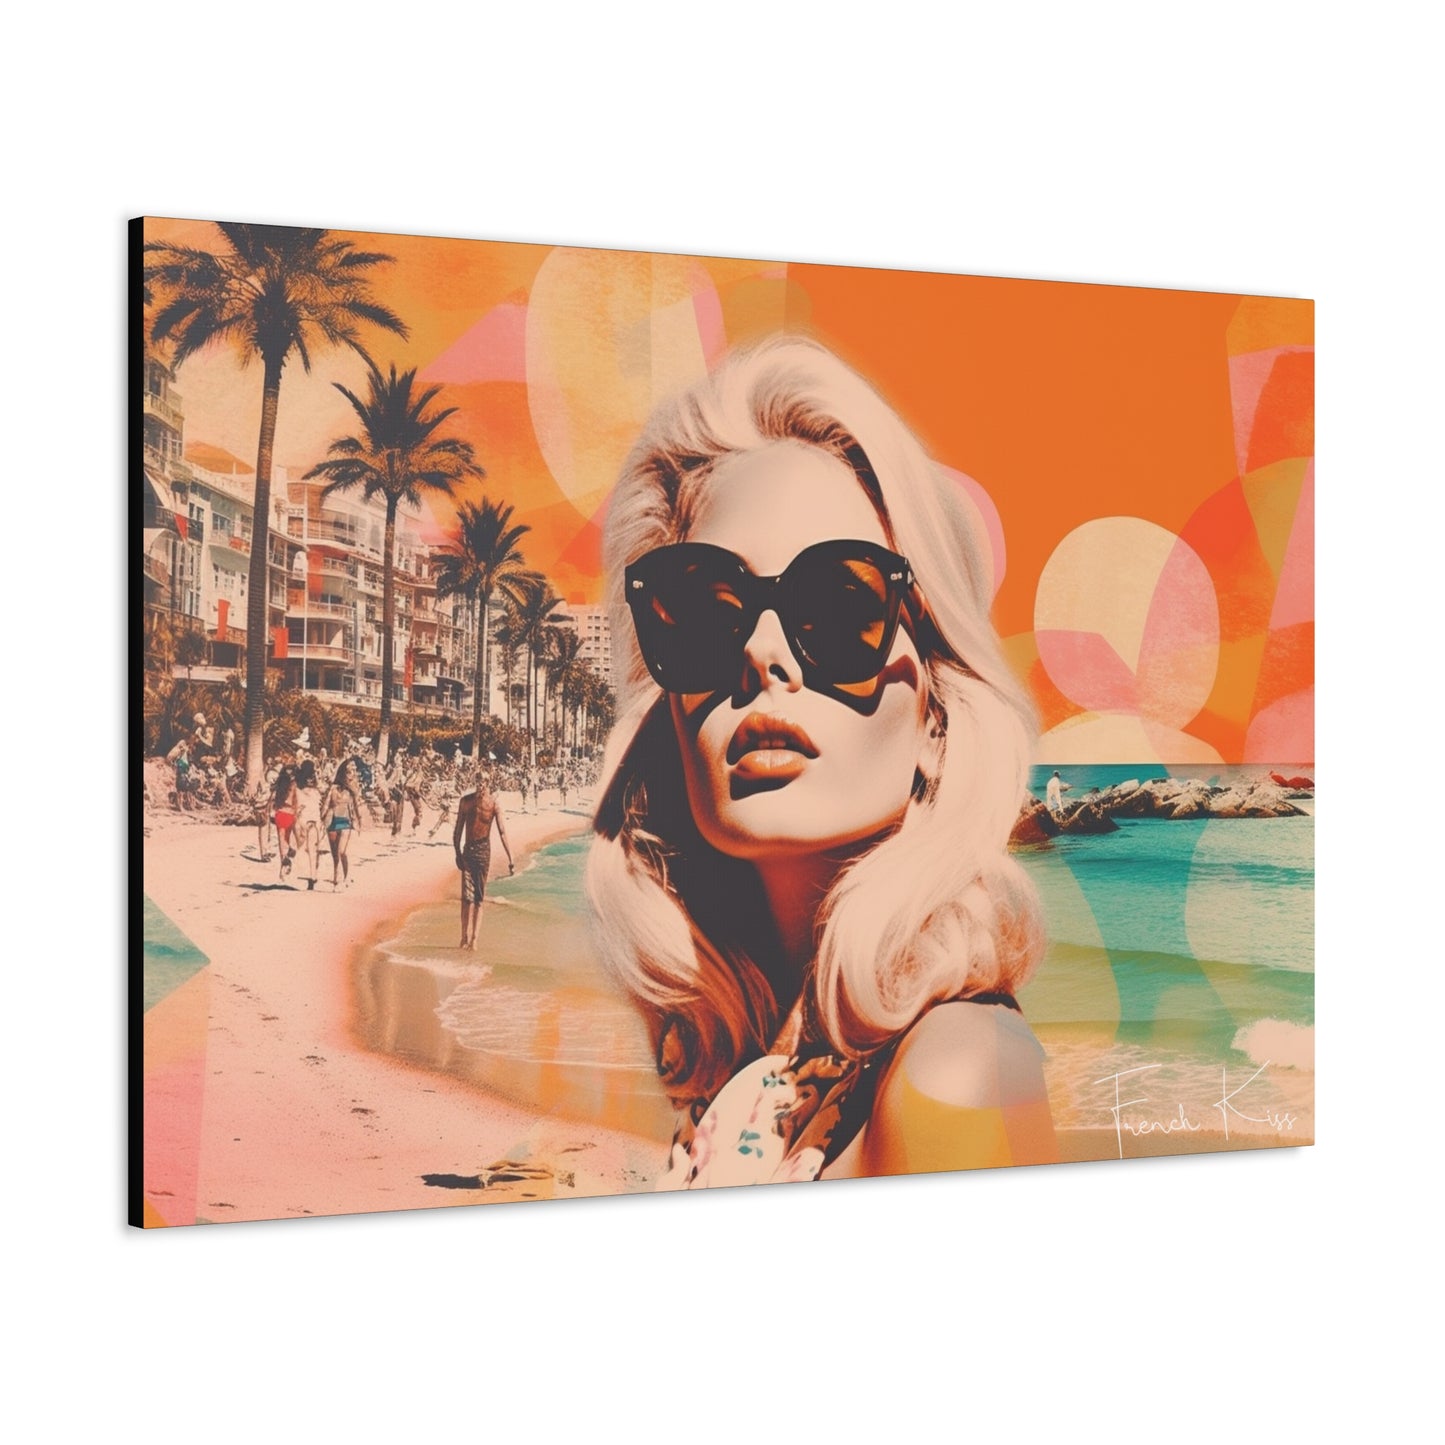 COTE SOLEIL French Kiss Pop Art, Gallery, Canvas, Art, Vintage, Retro, St. Tropez, Collection, French Riviera, Travel, Cote d'Azur, Cannes, Pop Art, Decor